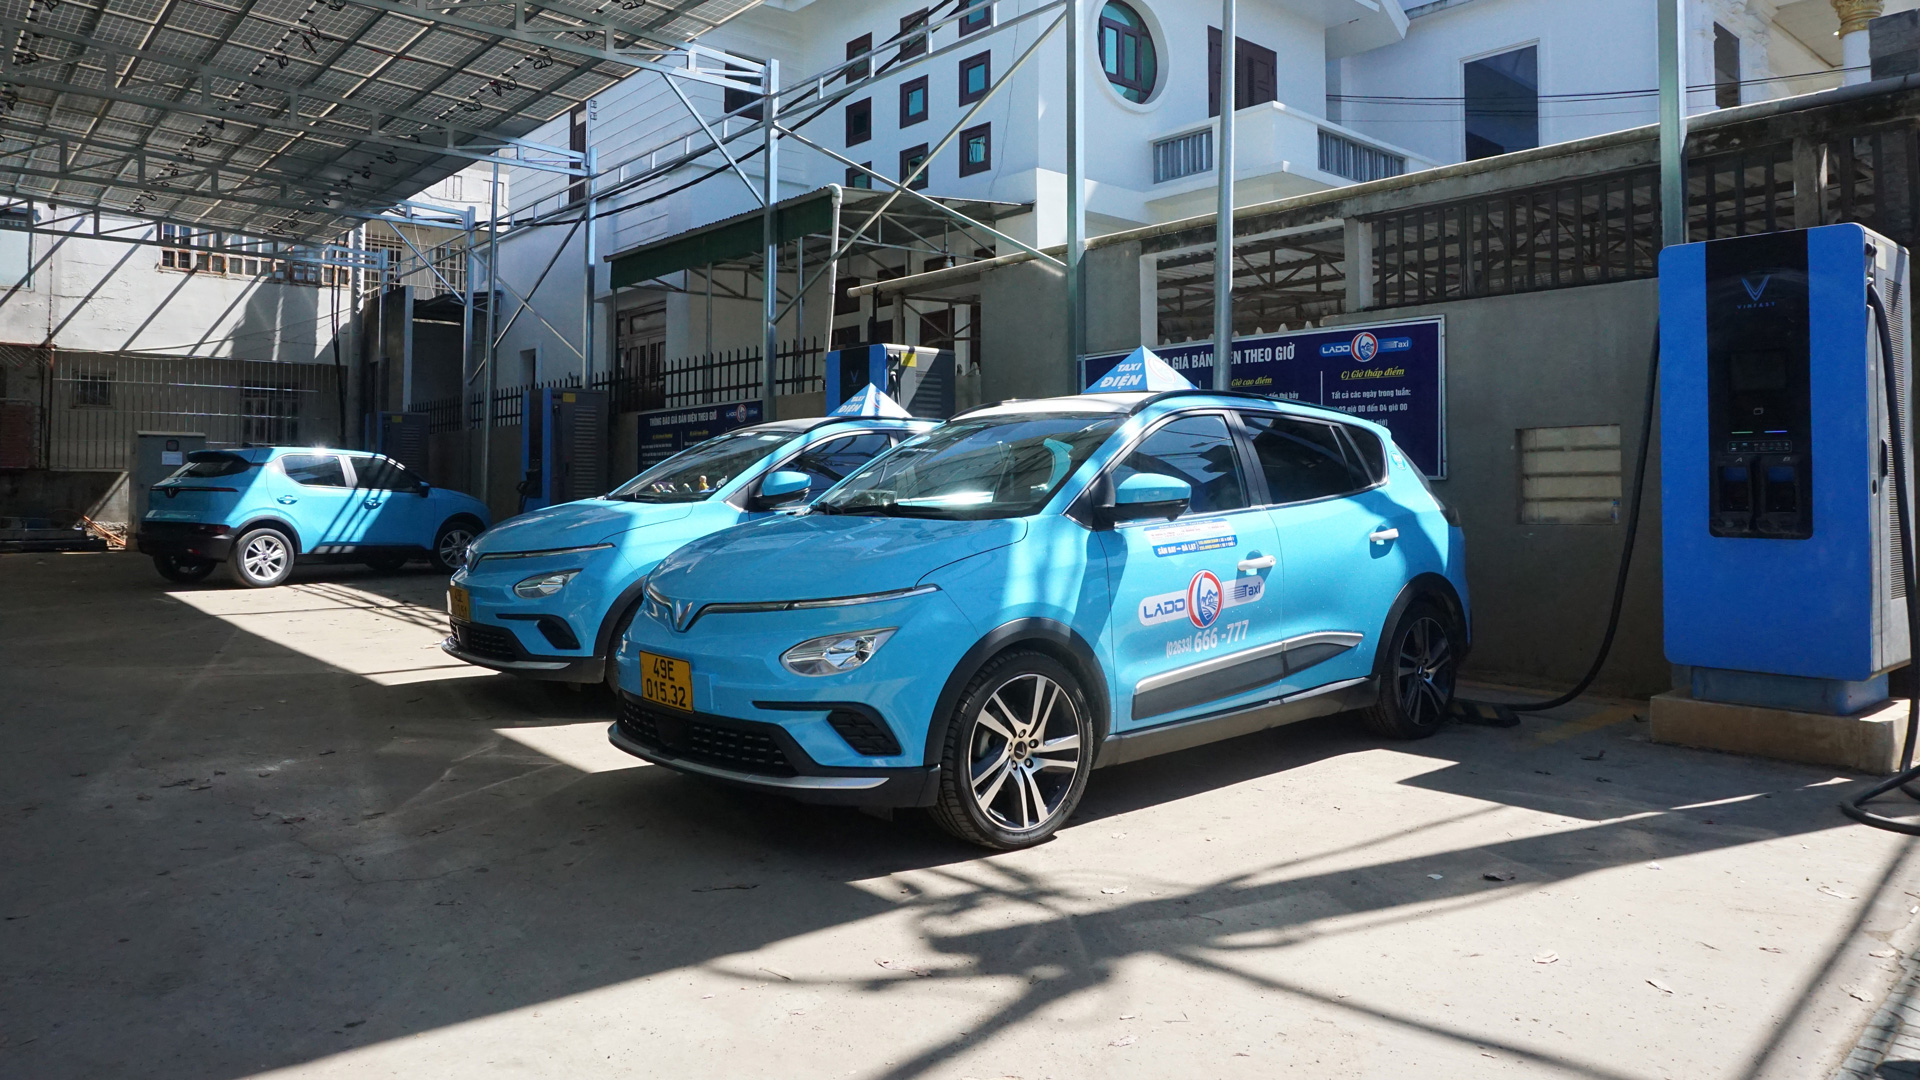 Phát triển các trạm sạc dùng điện năng lượng
mặt trời là giải pháp tối ưu nhằm thực hiện
triệt để “xanh hóa” dịch vụ taxi